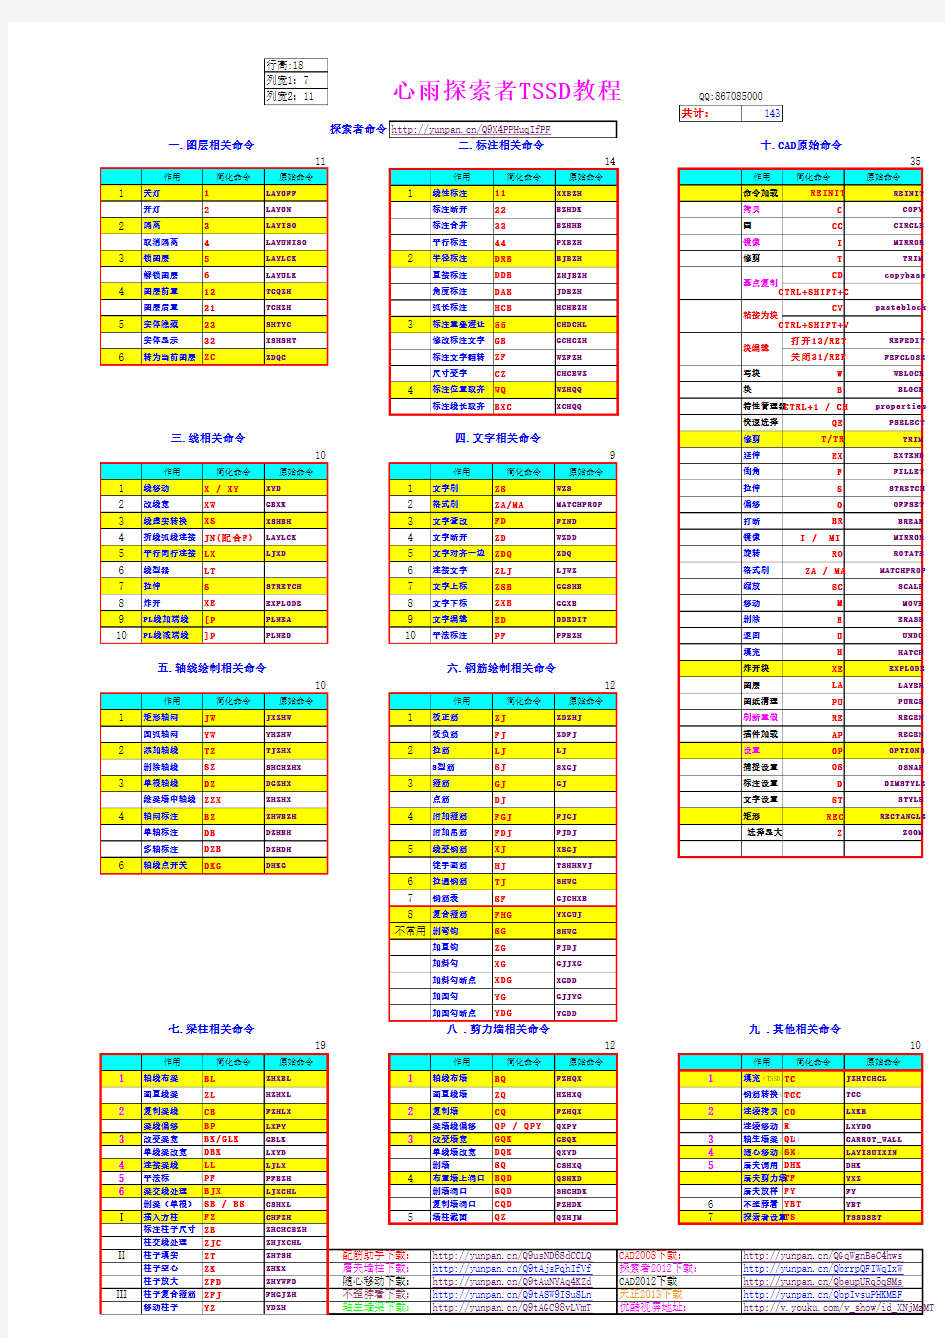 心雨探索者简化命令与原始命令对照表2013-11-10